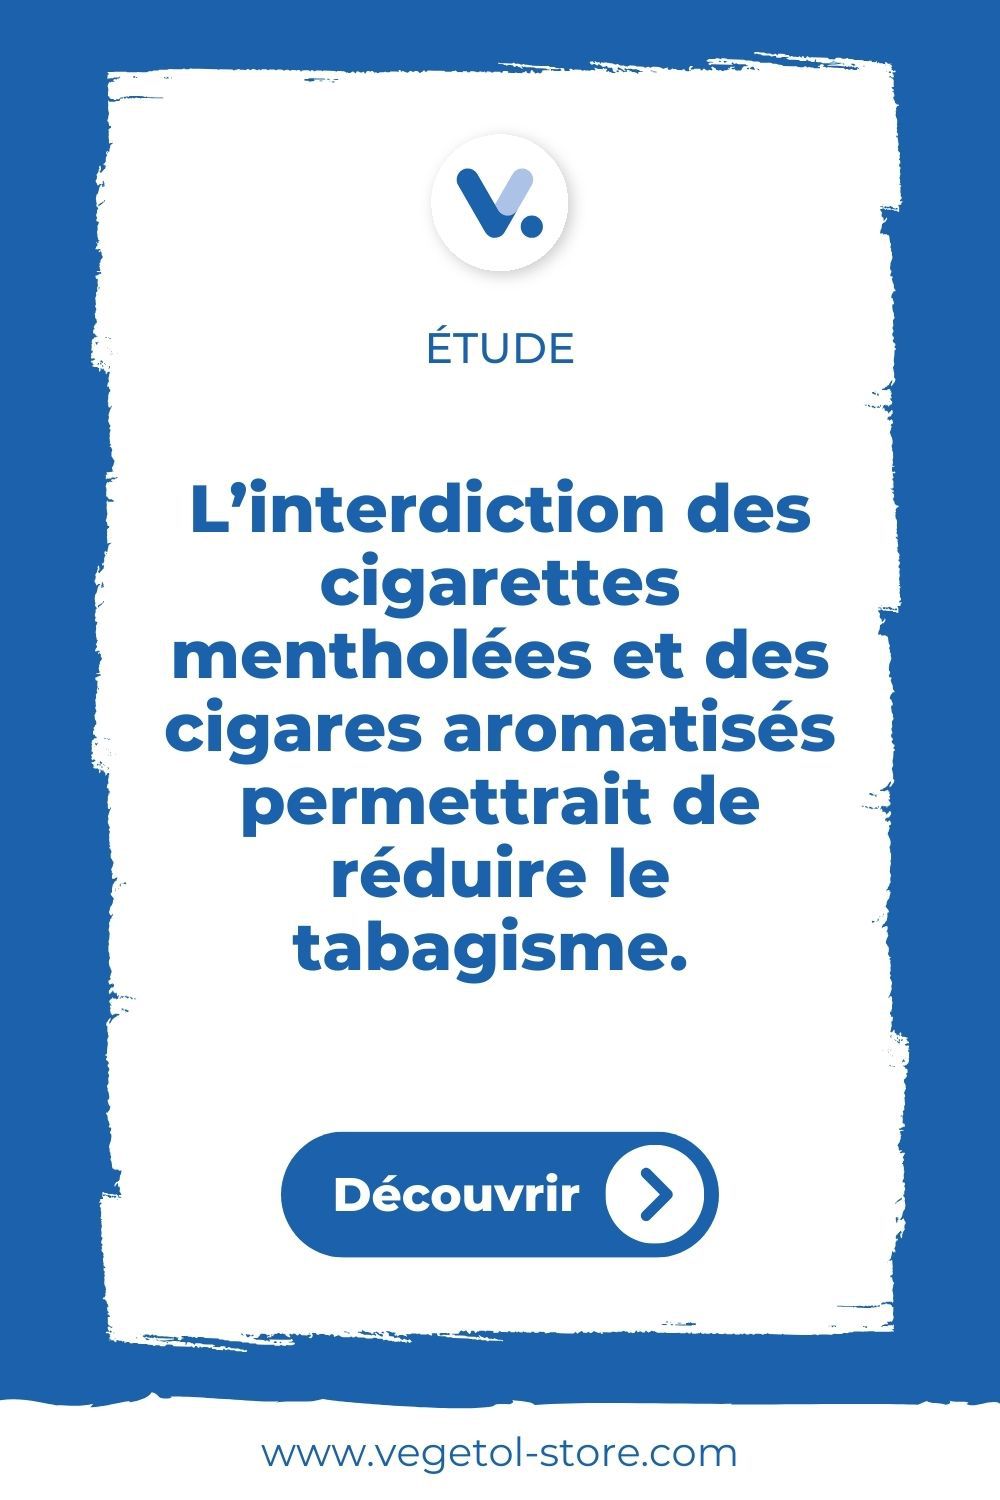 interdiction-e-liquide-menthe-reduire-tabac